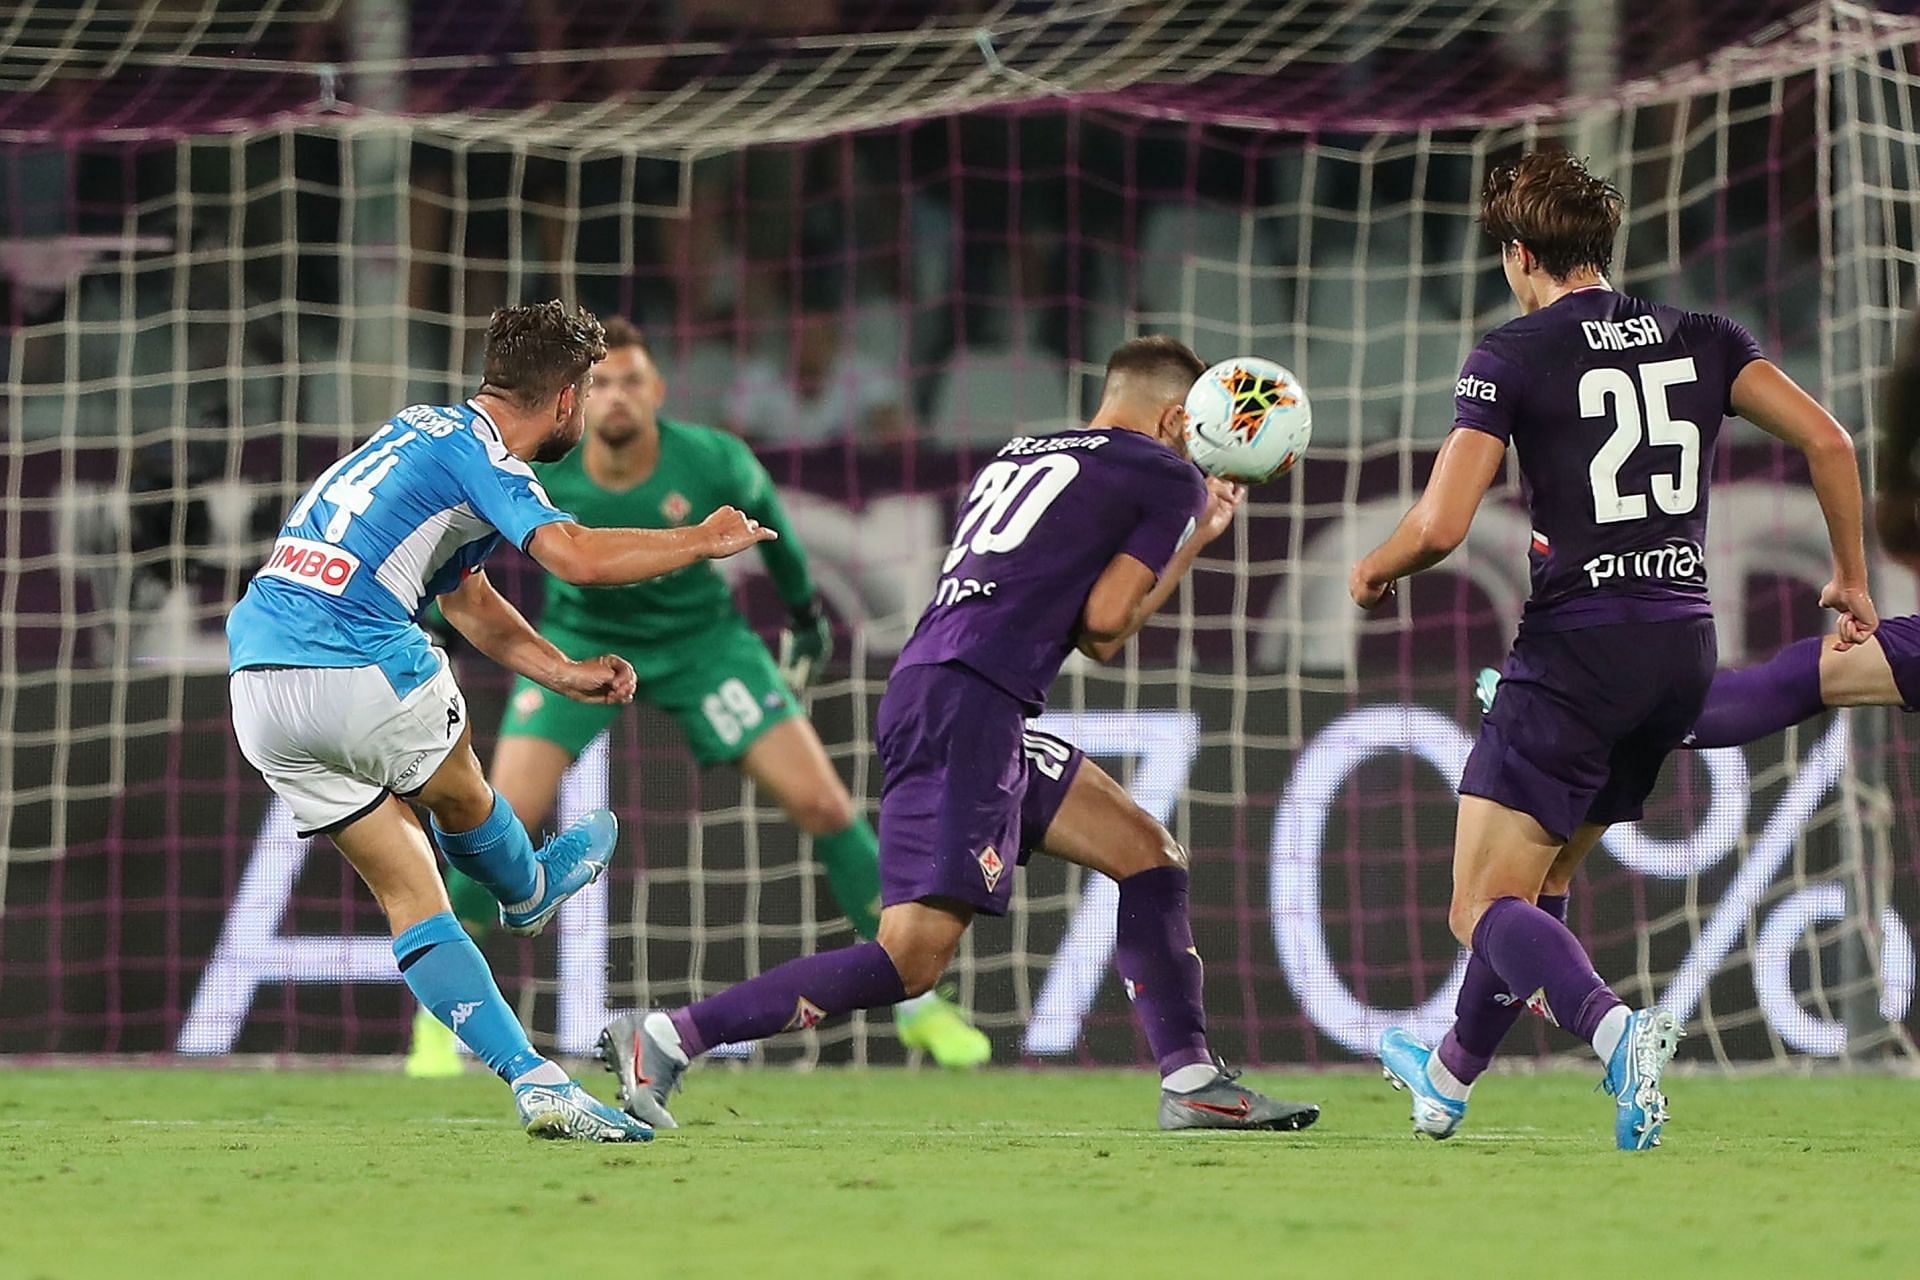 Fiorentina take on Napoli this week